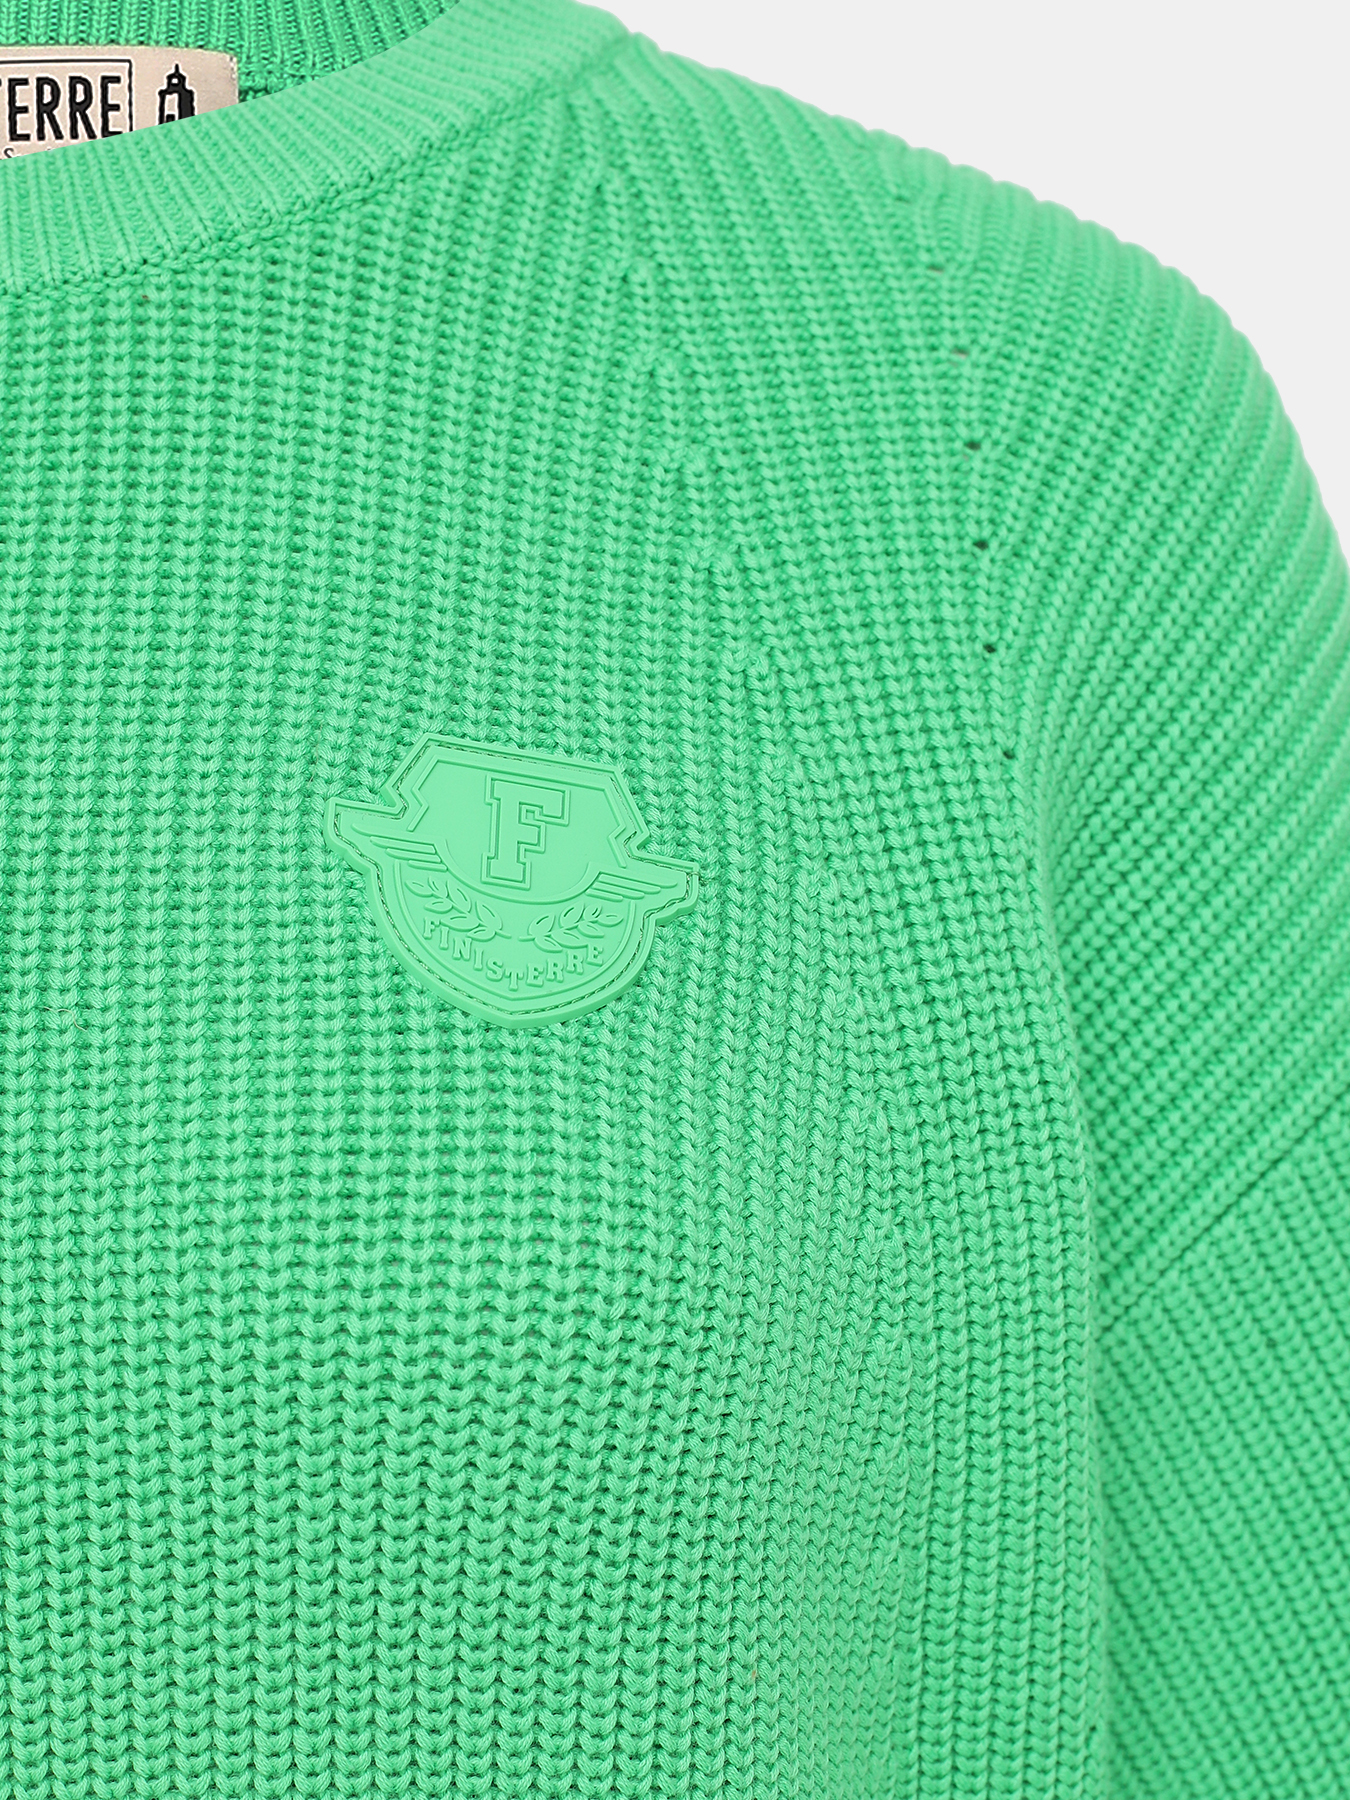 Джемпер Finisterre 419143-021, цвет зеленый, размер 42 - фото 3